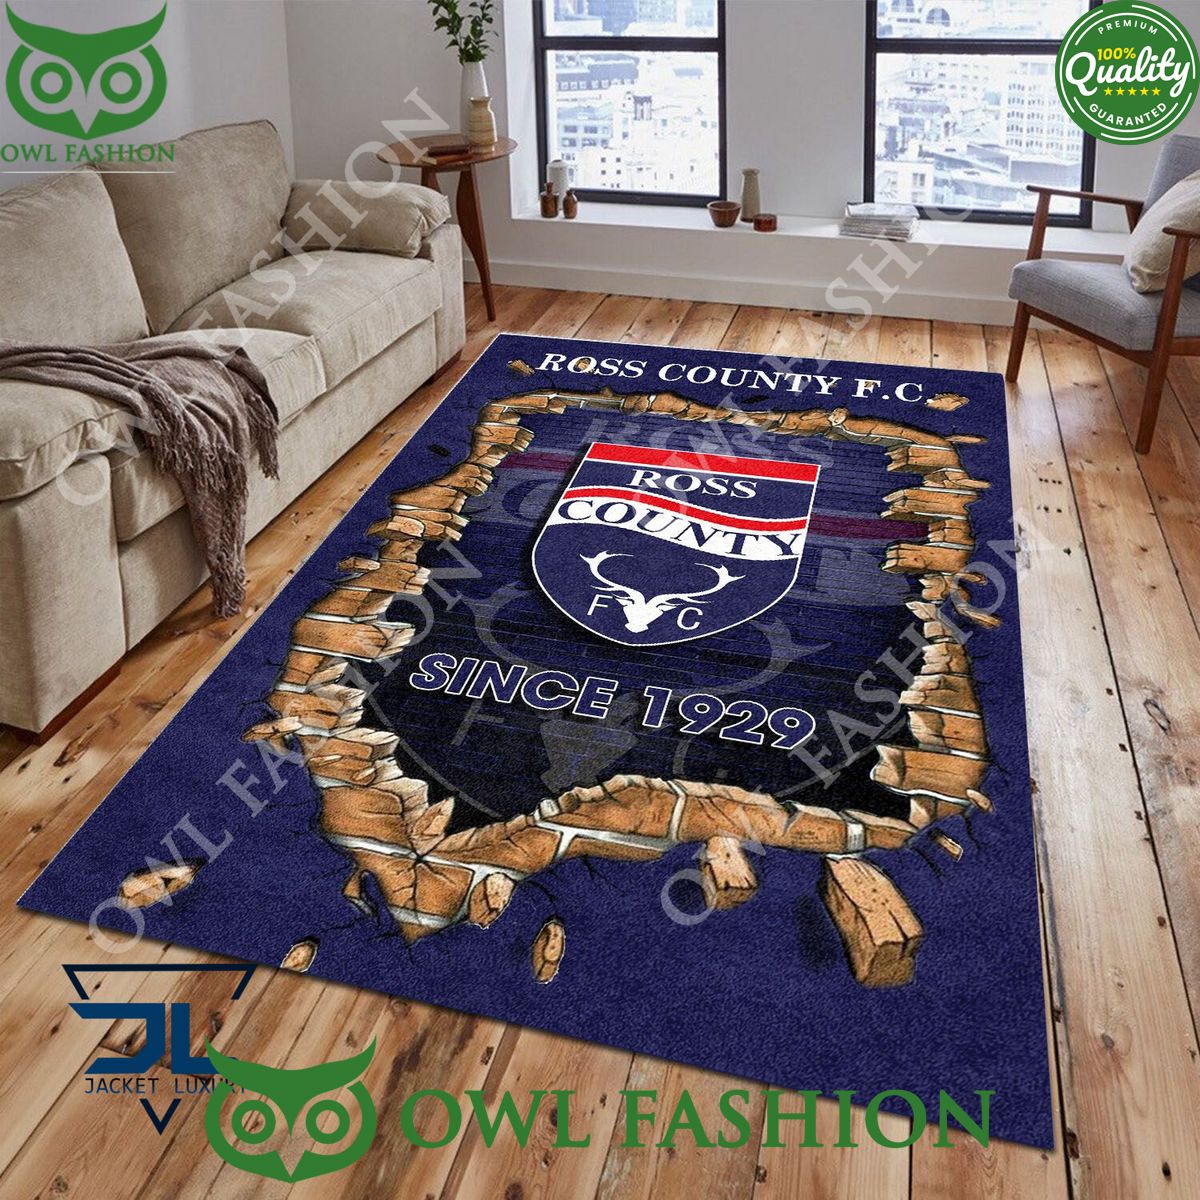 Ross County F.C. 1789 Scottish Broken Wall Living Room Carpet